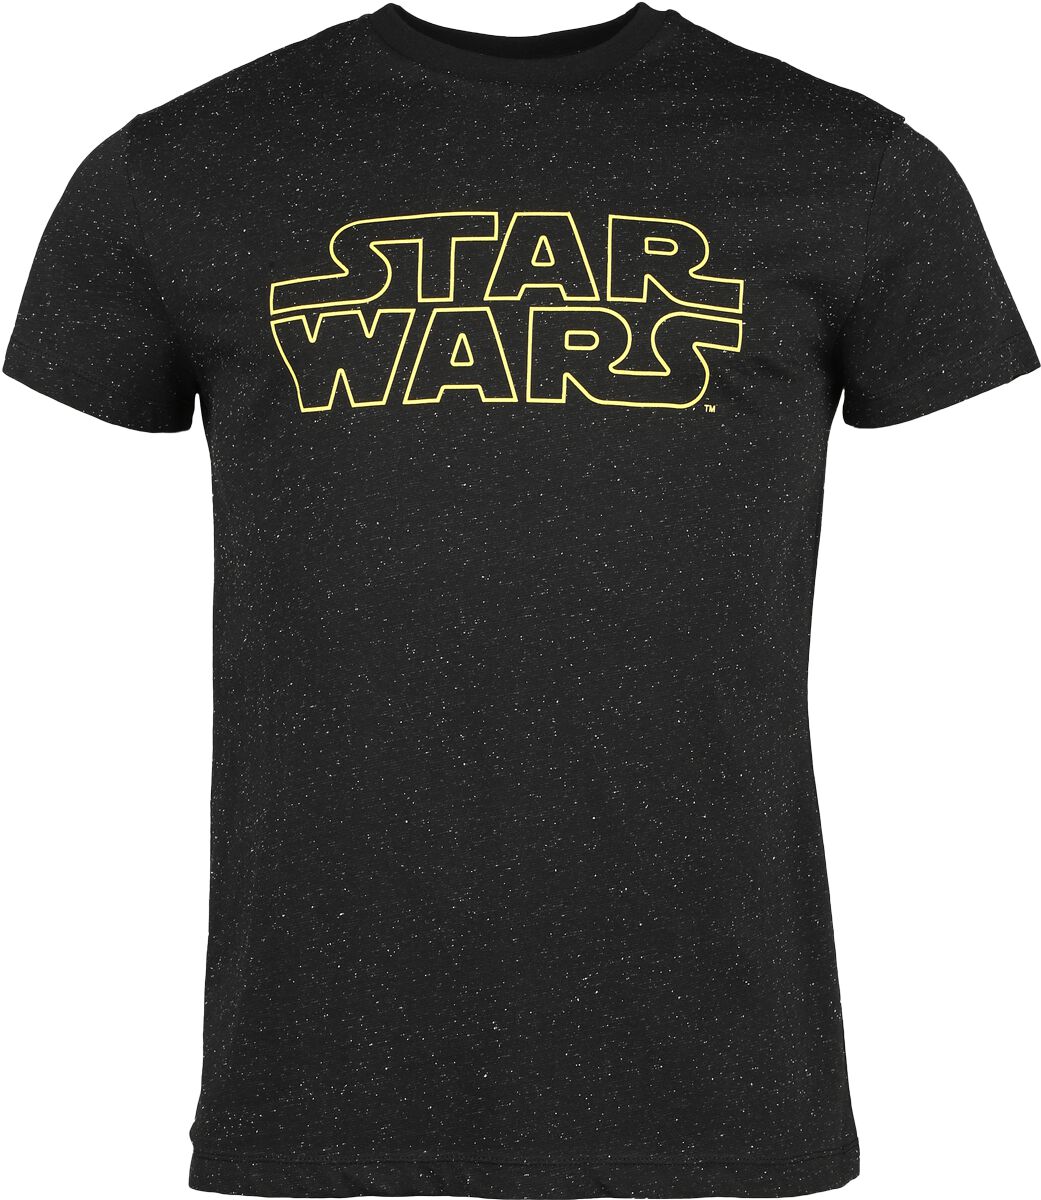 Star Wars T-Shirt - Star Wars - Galaxy - S bis 3XL - für Männer - Größe XL - schwarz  - EMP exklusives Merchandise!